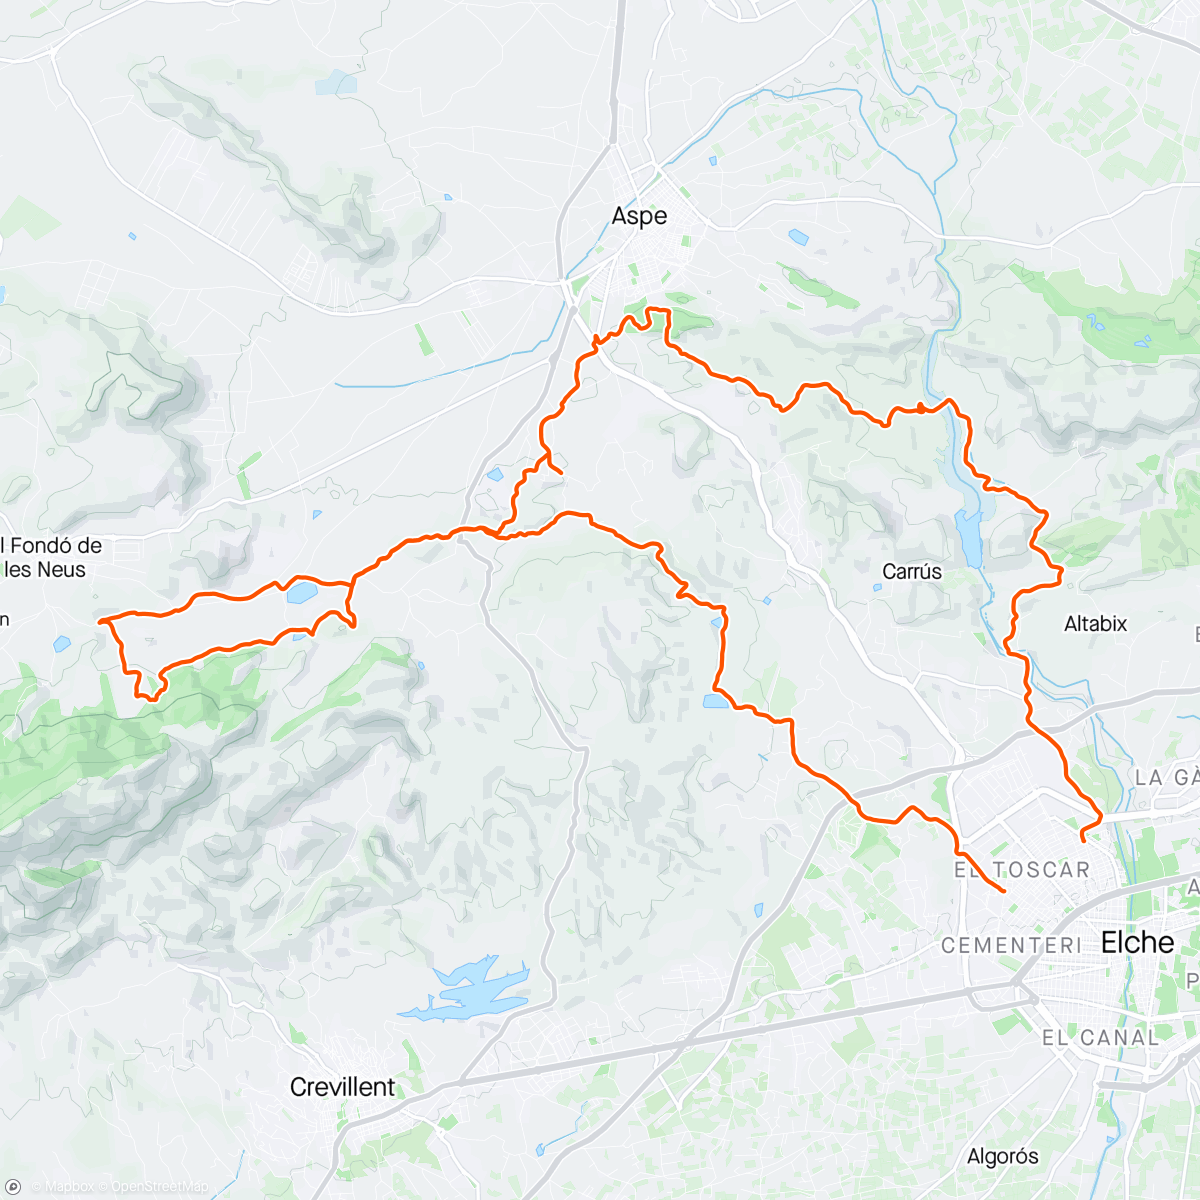 Map of the activity, Ruta Cumpleañera de Manuel, Culebra, Cantal de Eraes sin Cristales y en-rampao